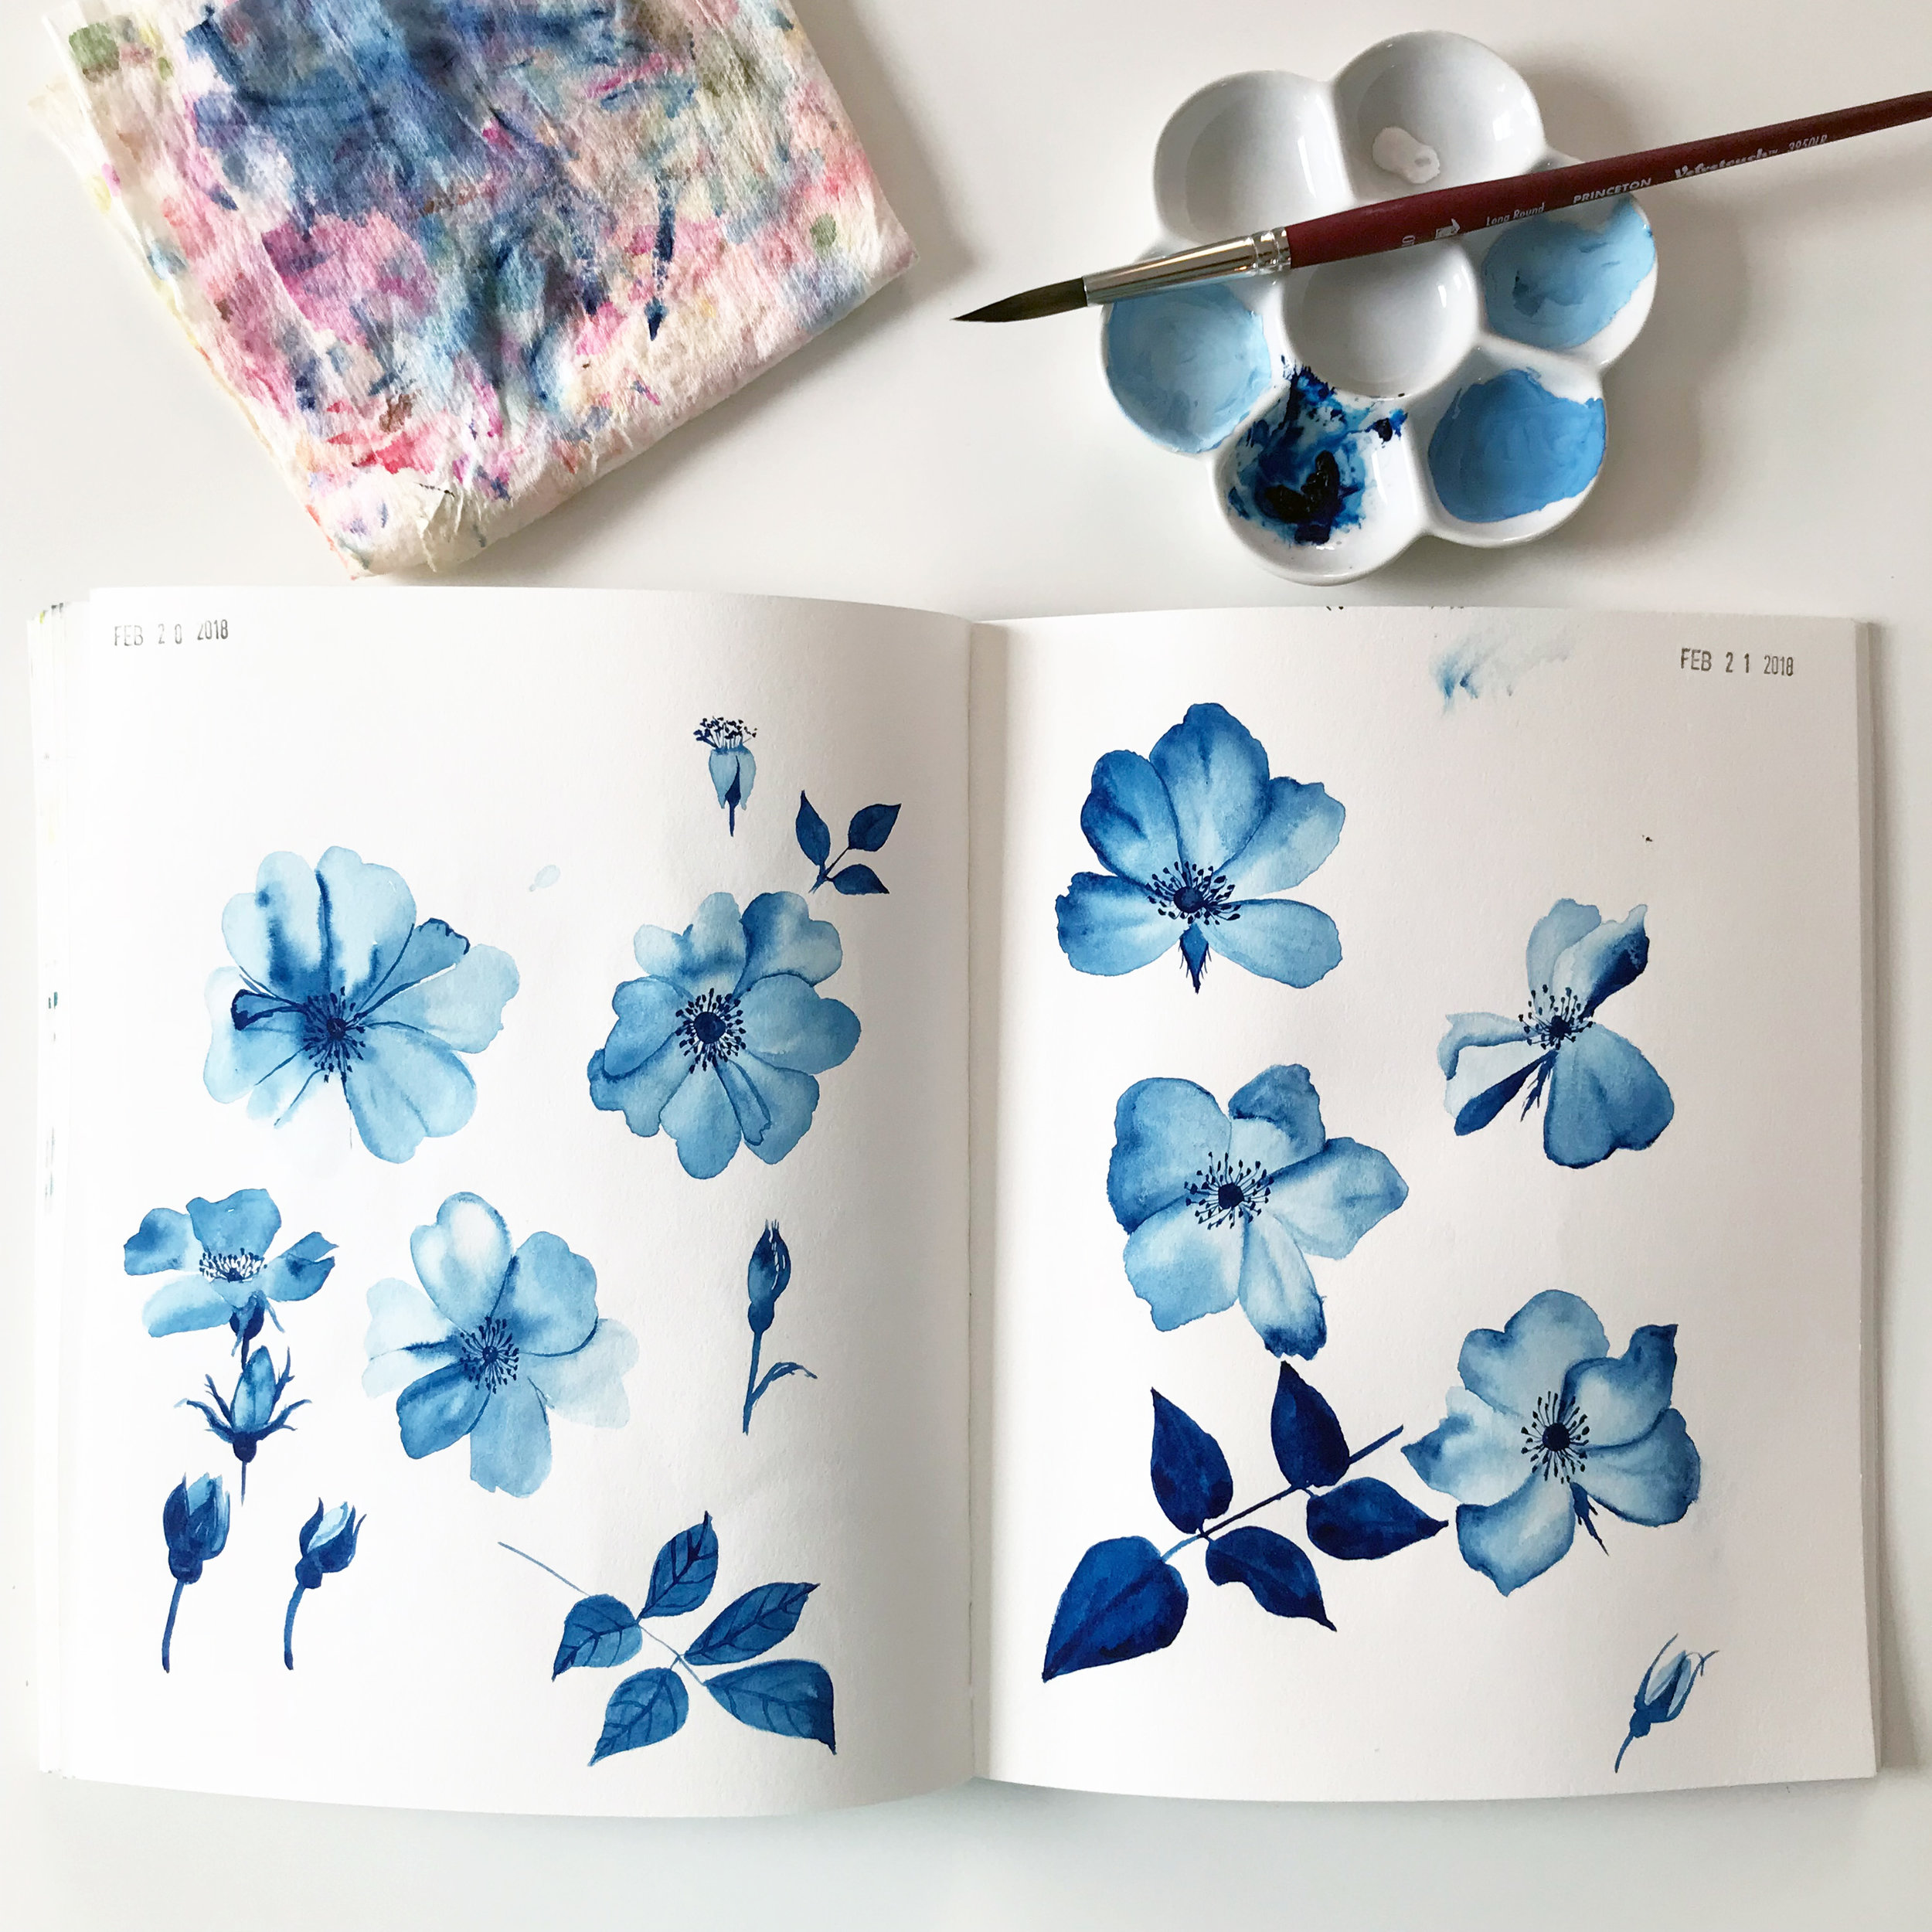 Prussian Blue Gouache Roses in Anne Butera's Sketchbook